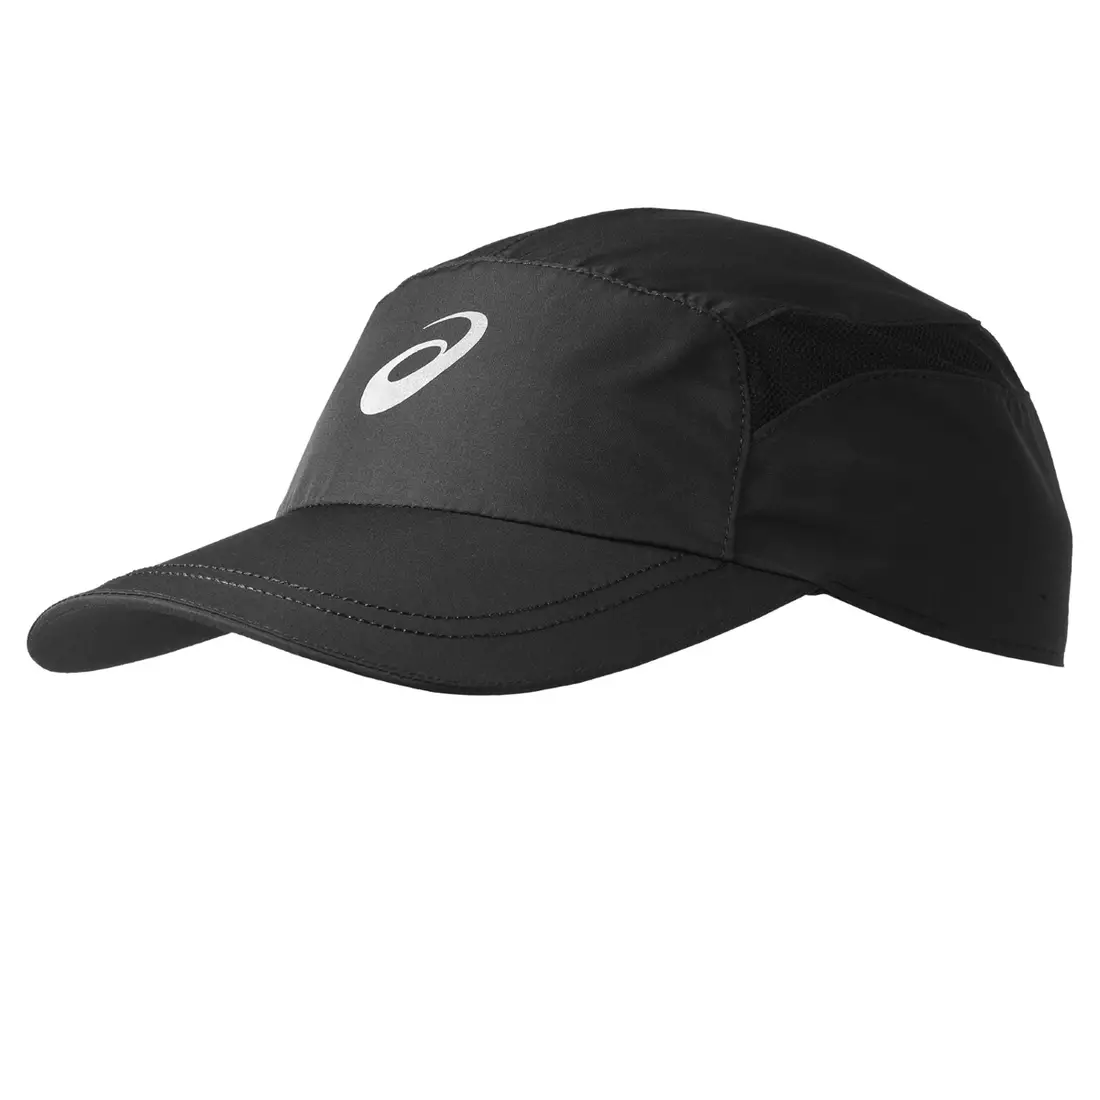 ȘAPCA ASICS 110528-0904 ESSENTIALS - șapcă de alergare, culoare: Negru